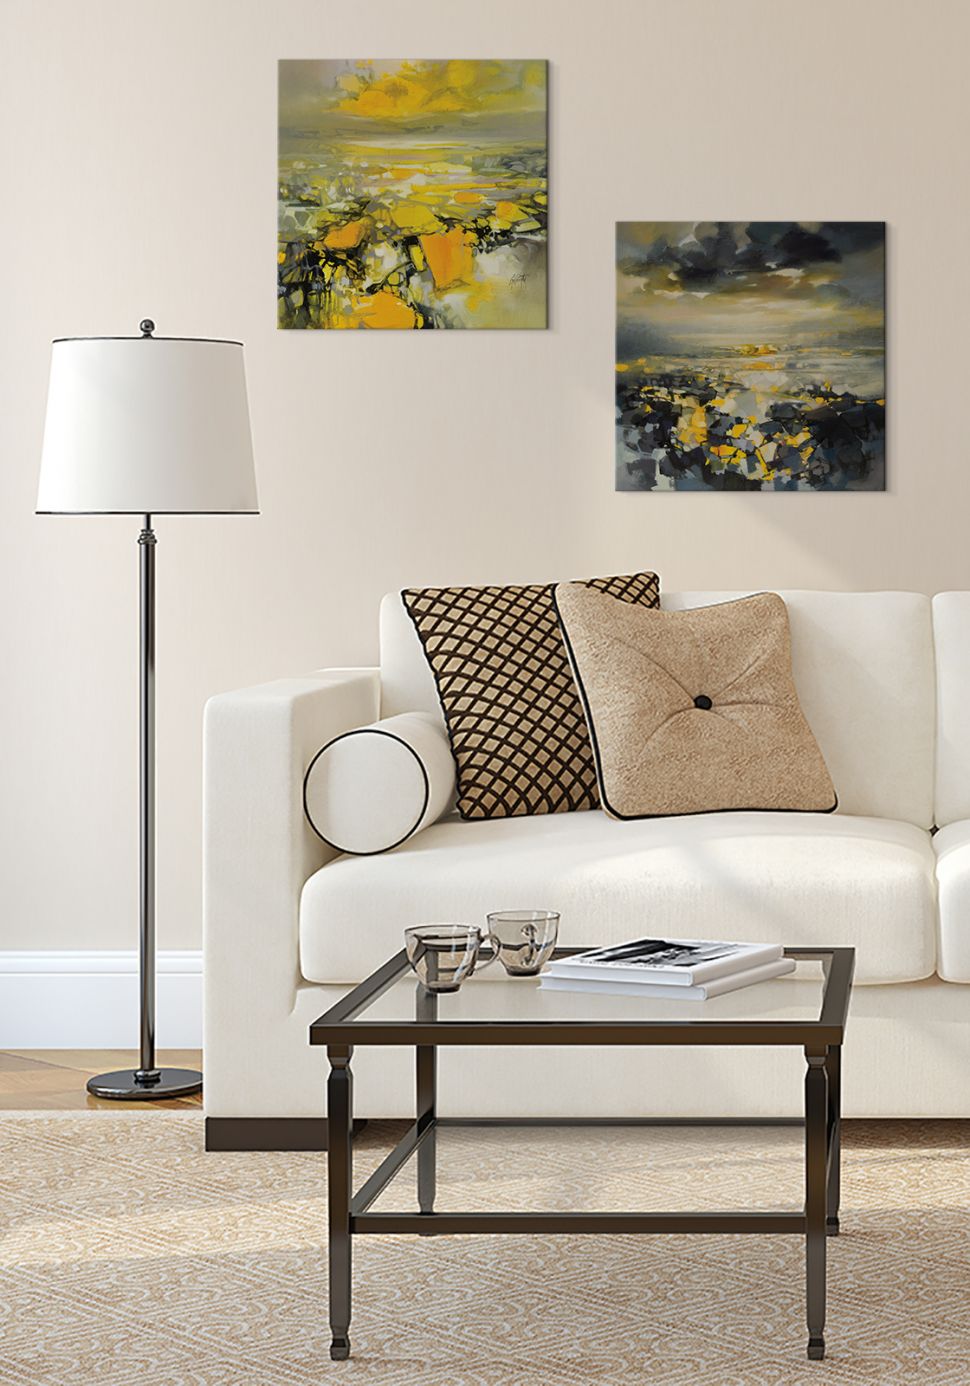 Abstrakcyjny obraz na płótnie Yellow Matter 1 wiszący w salonie nad białą kanapą